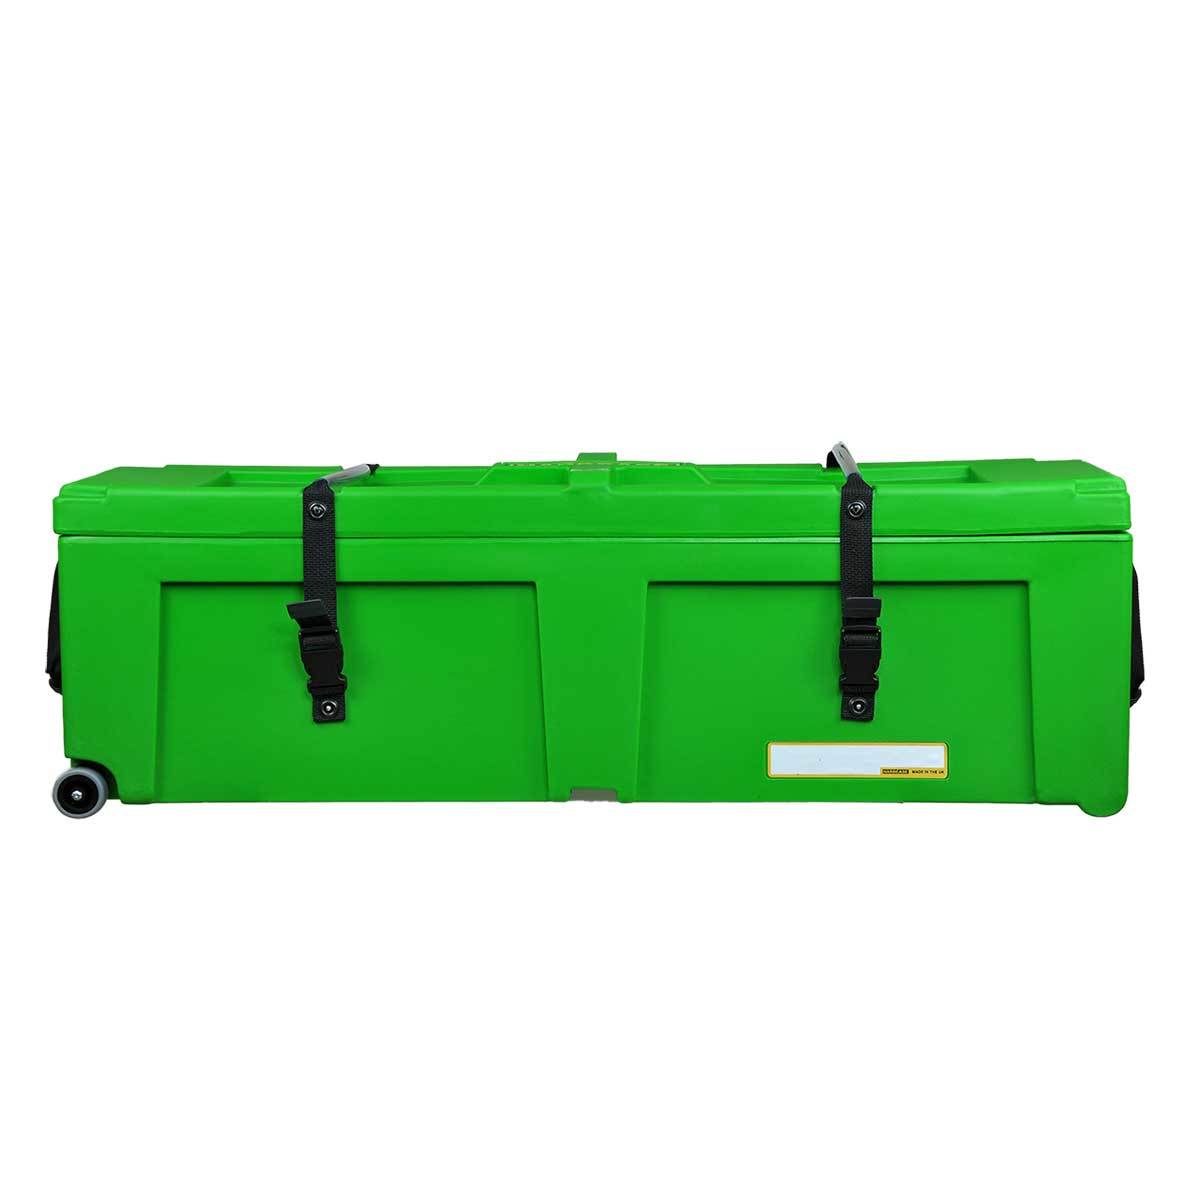 Hardcase 40 İnç Tekerlekli Açık Yeşil Metal Aksam Kutusu (HNP40WLG)